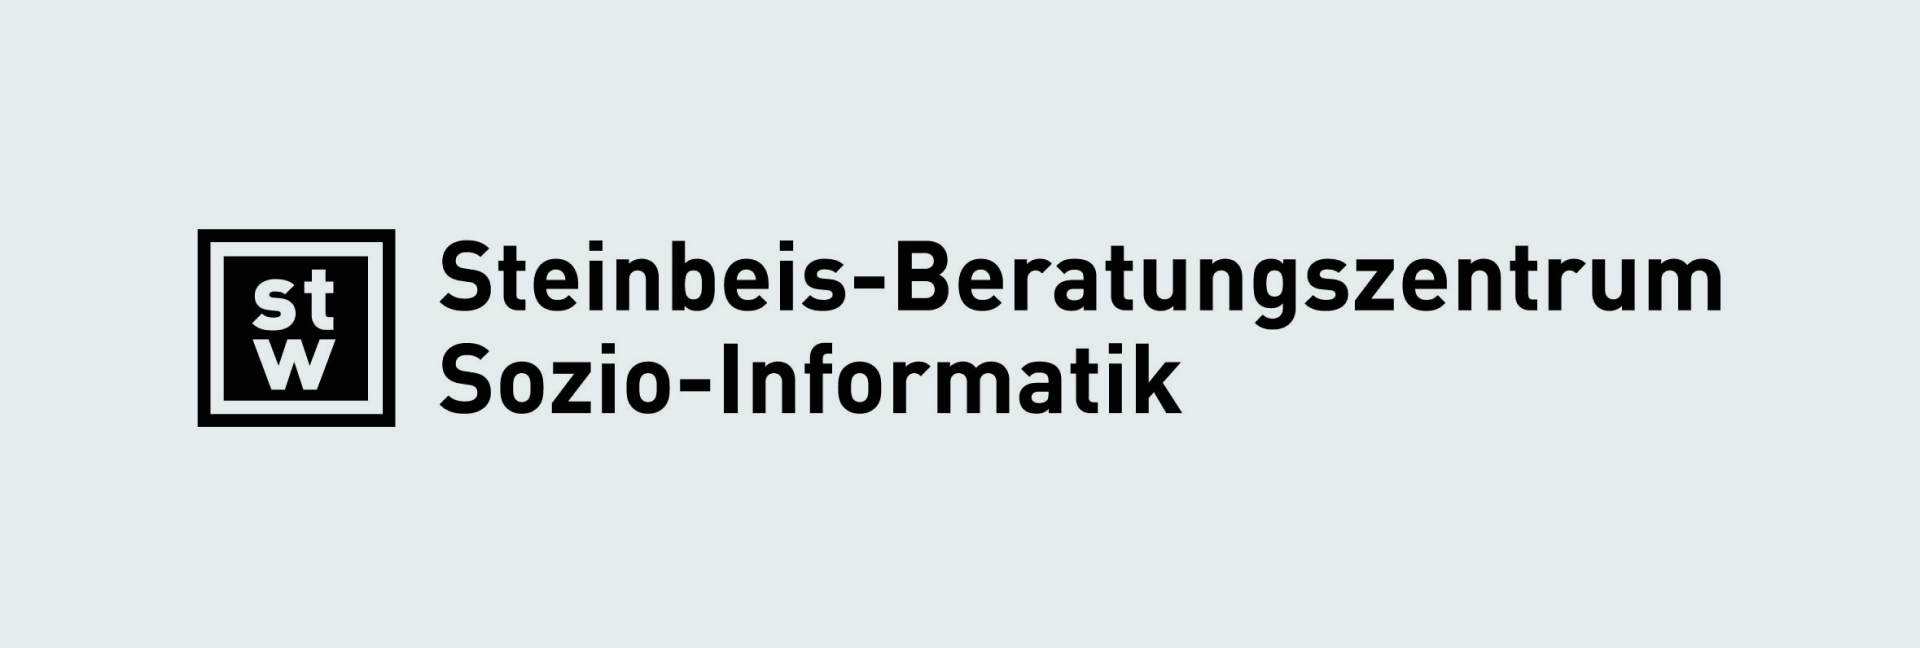 Steinbeis-Beratungszentrum Sozio-Informatik Logo TransNEXT Partner